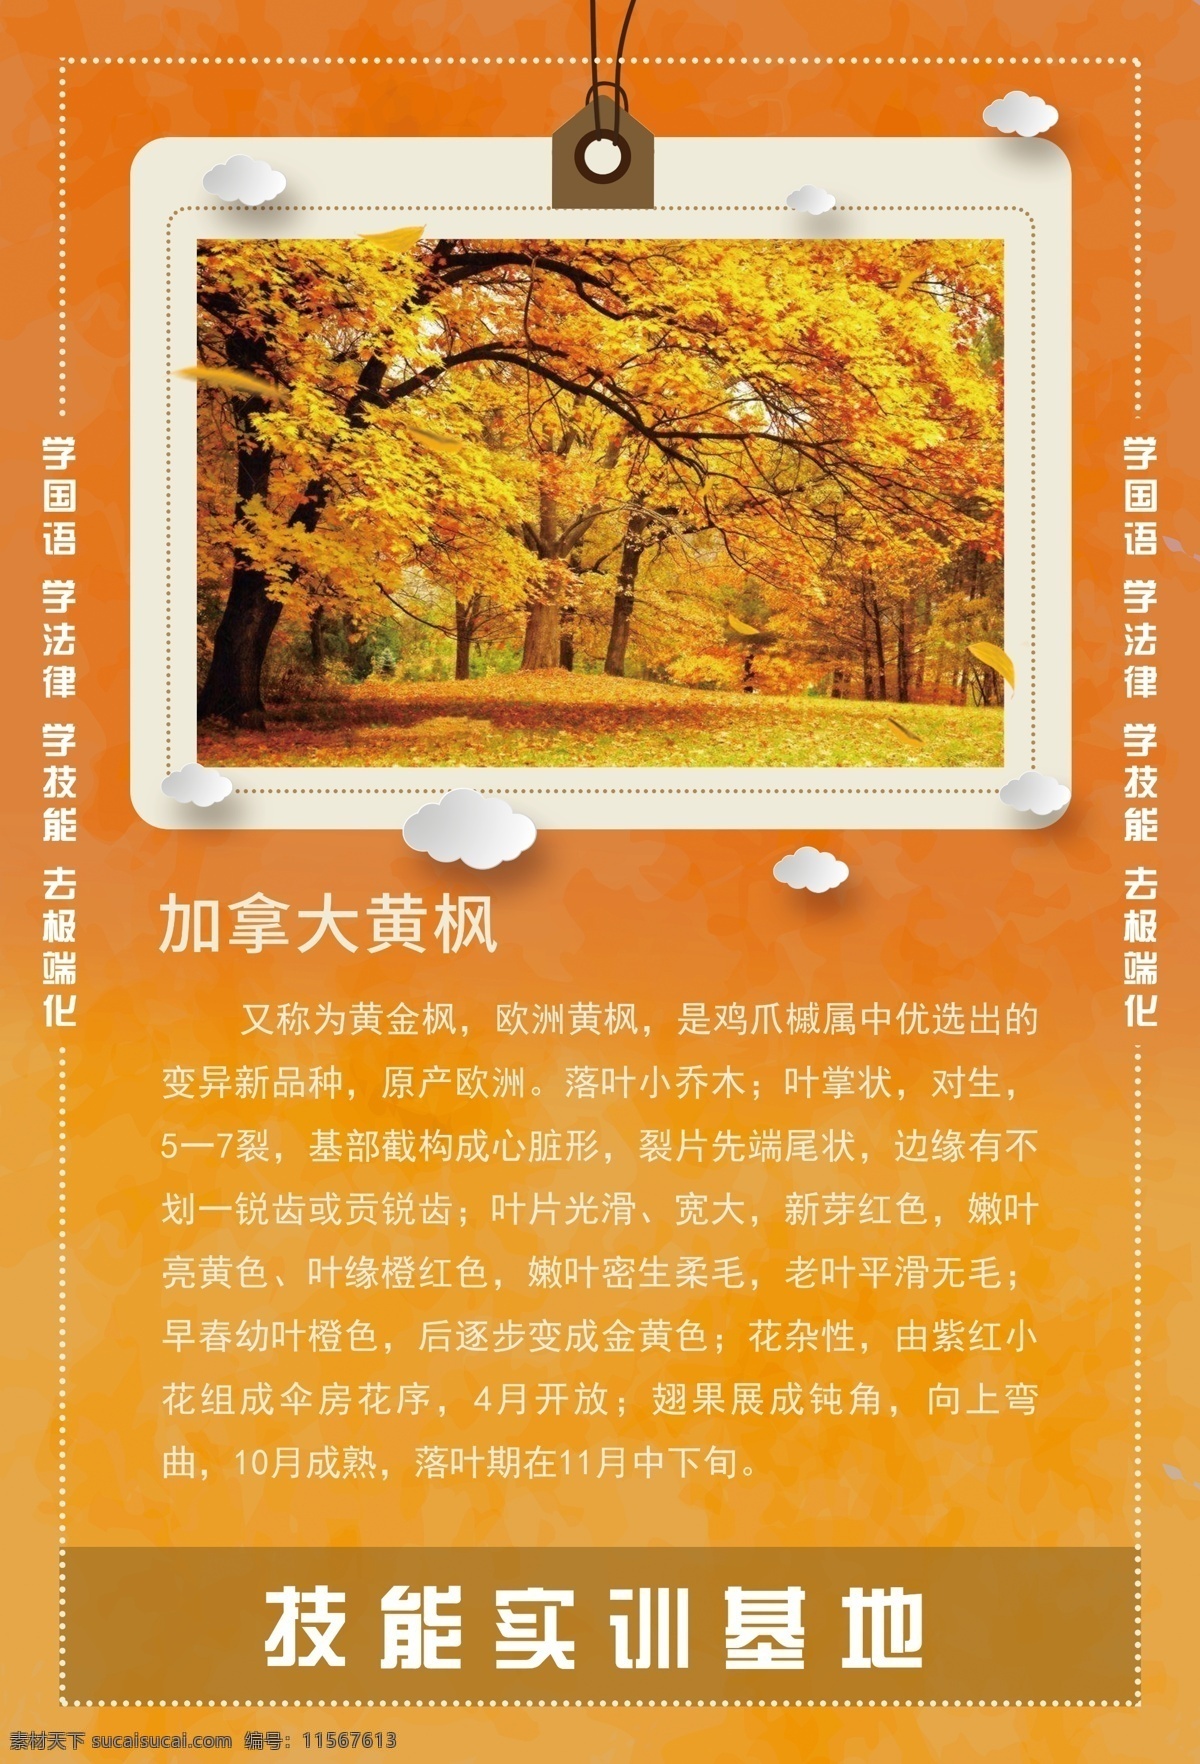 加拿大黄枫 树 植物 系列 植物简介 树枝 海报 挂画 精艺广告